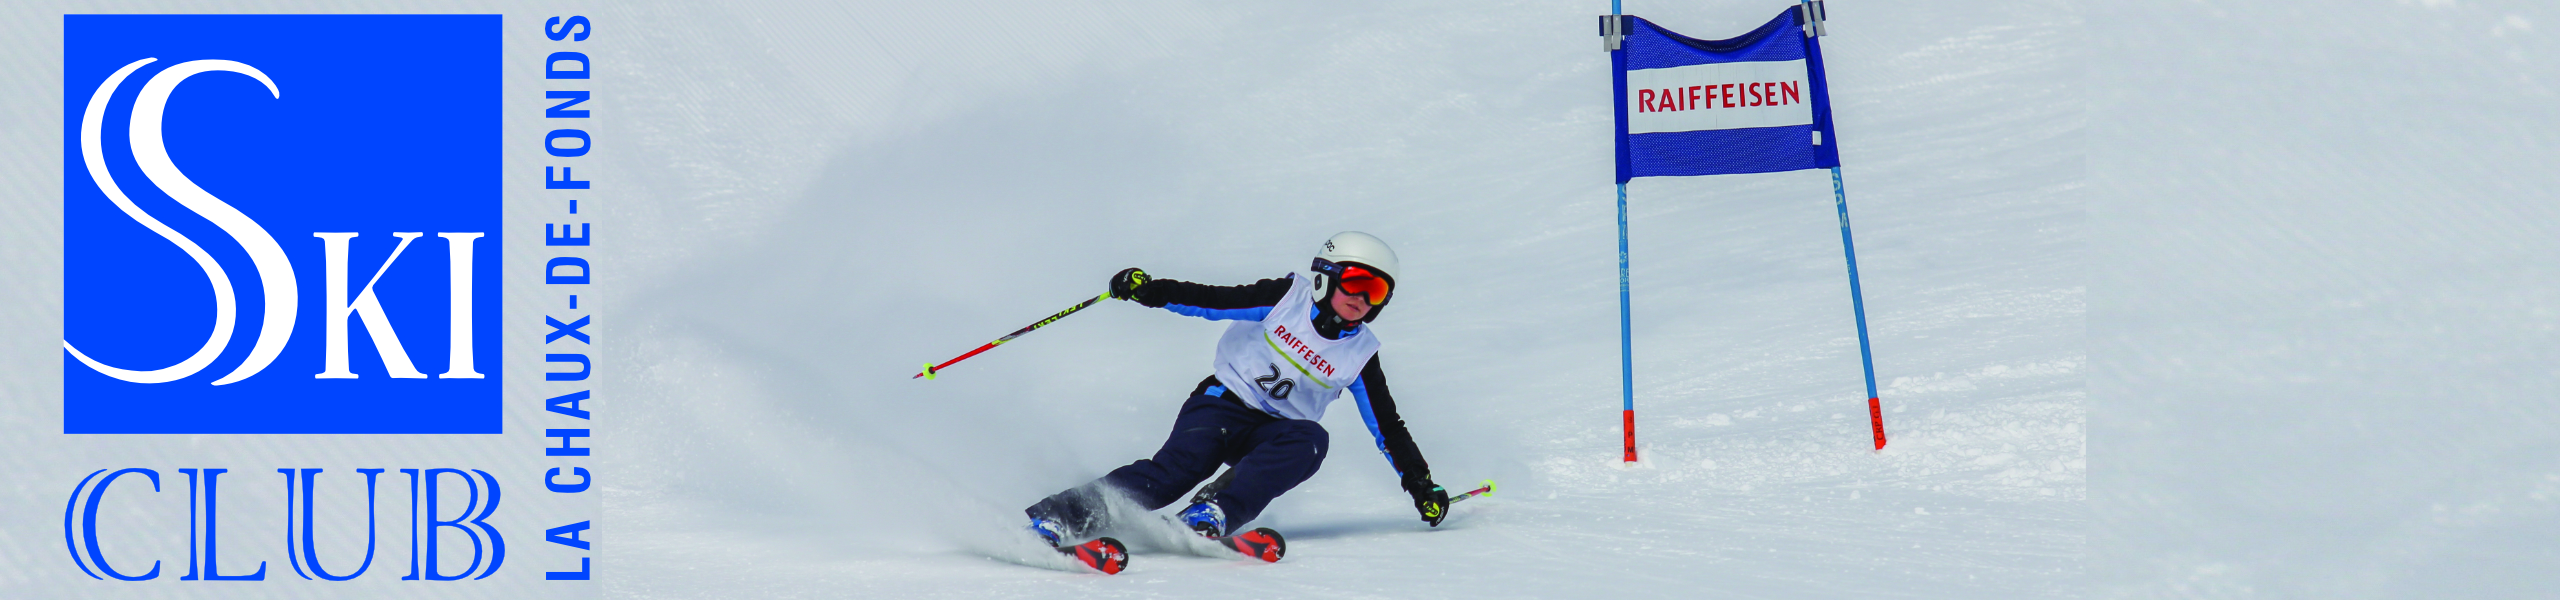 Ski-Club La Chaux-de-Fonds